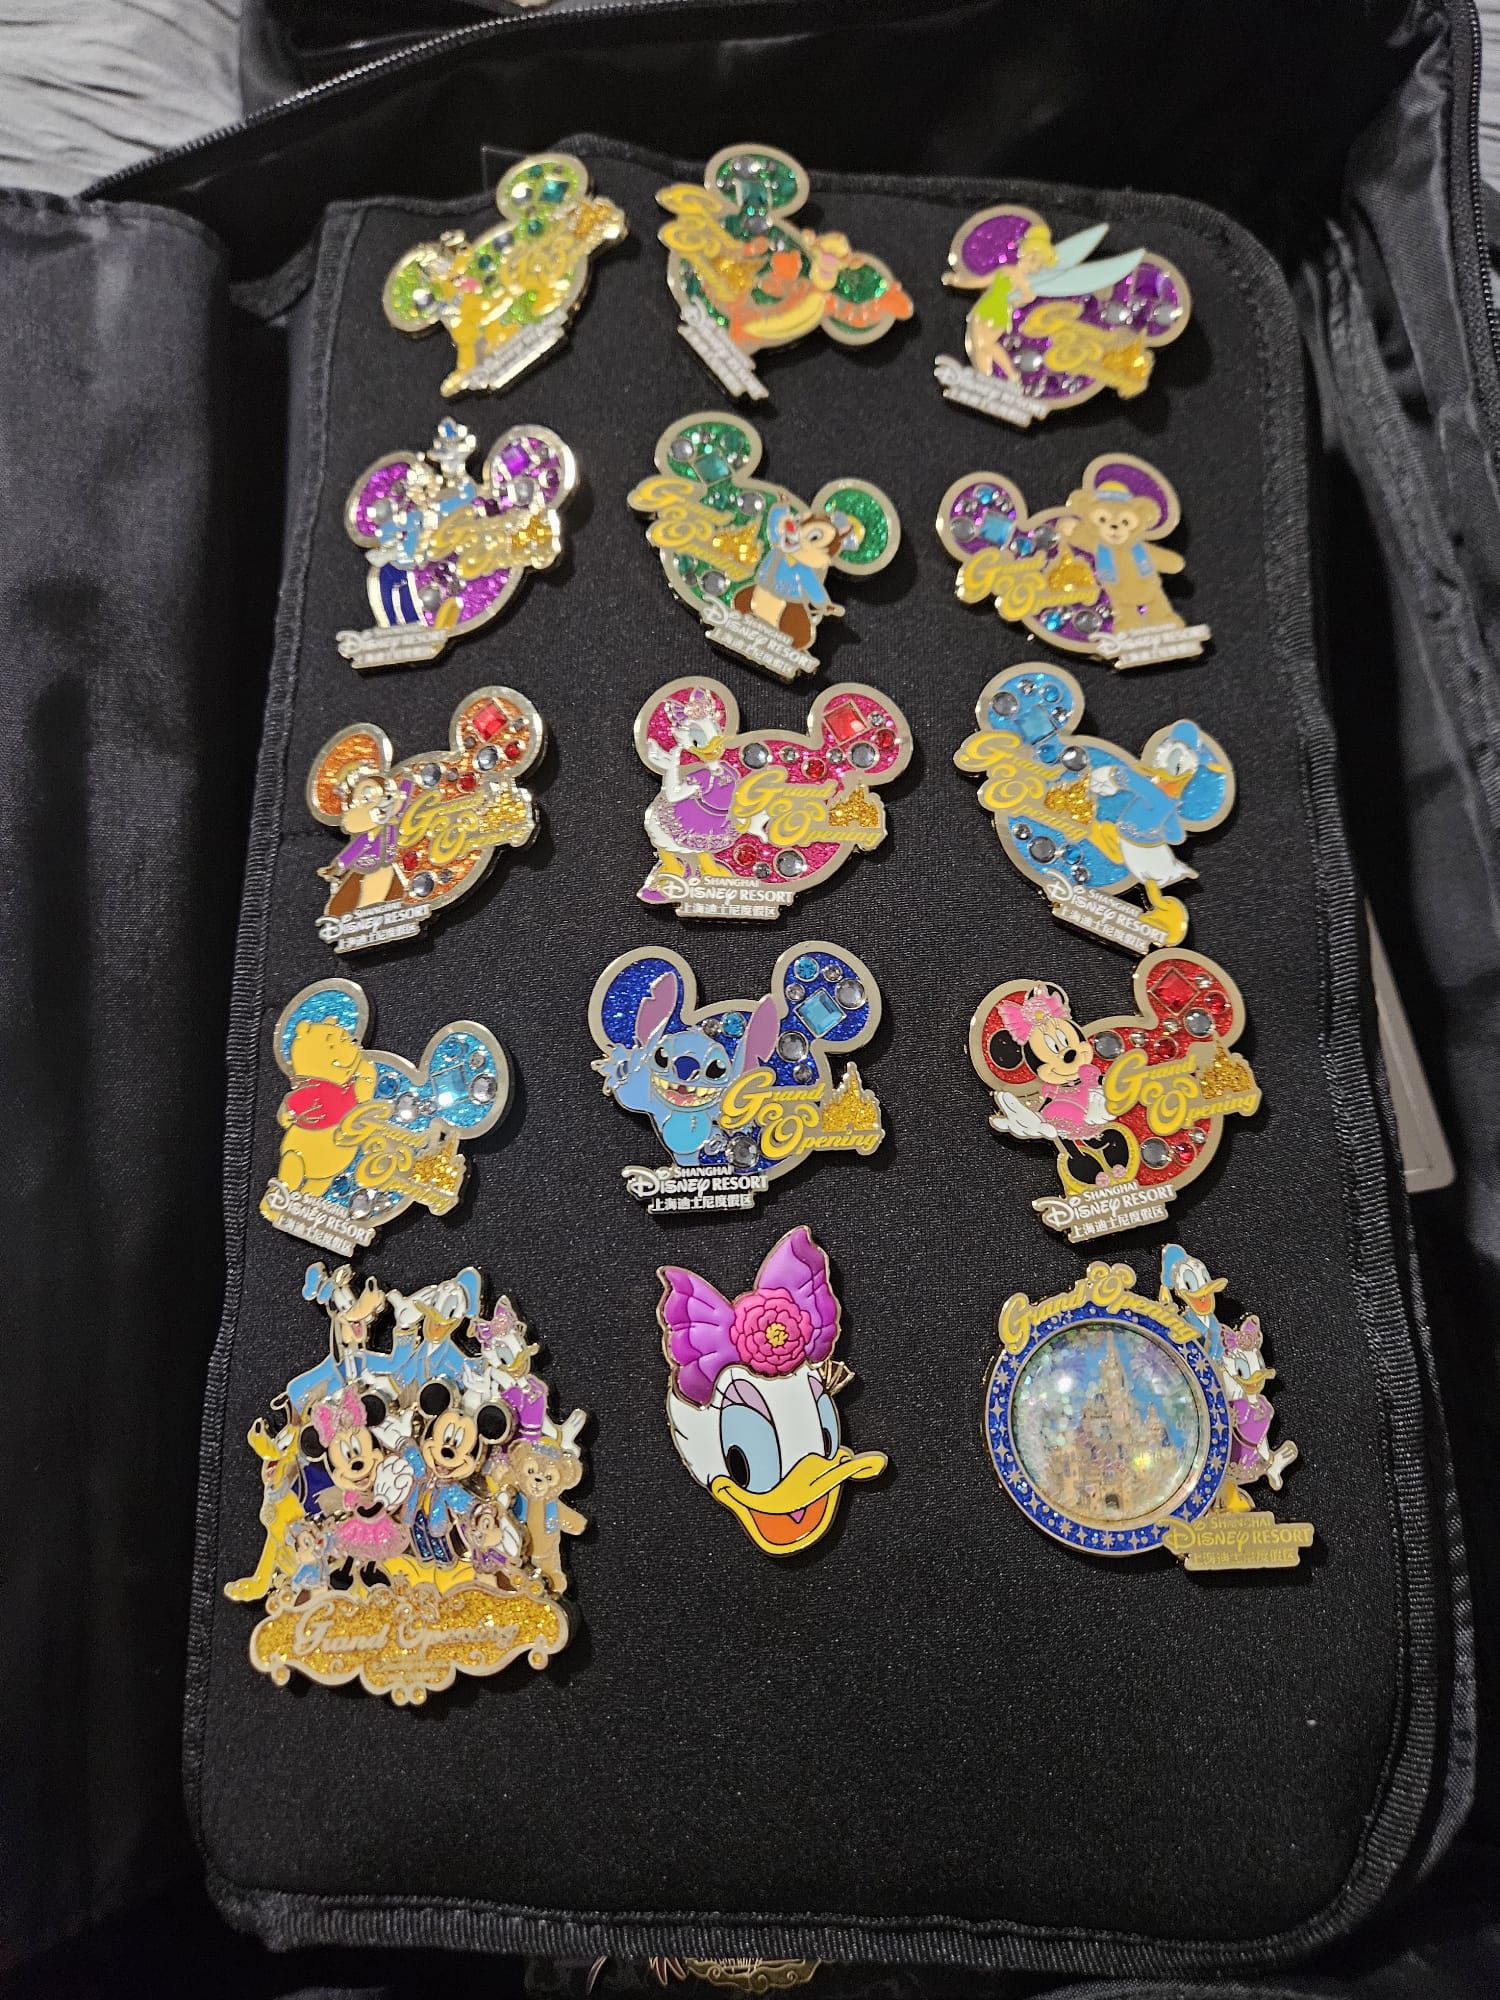 Shanghai Disney Resort Grande Opening Pin Collection